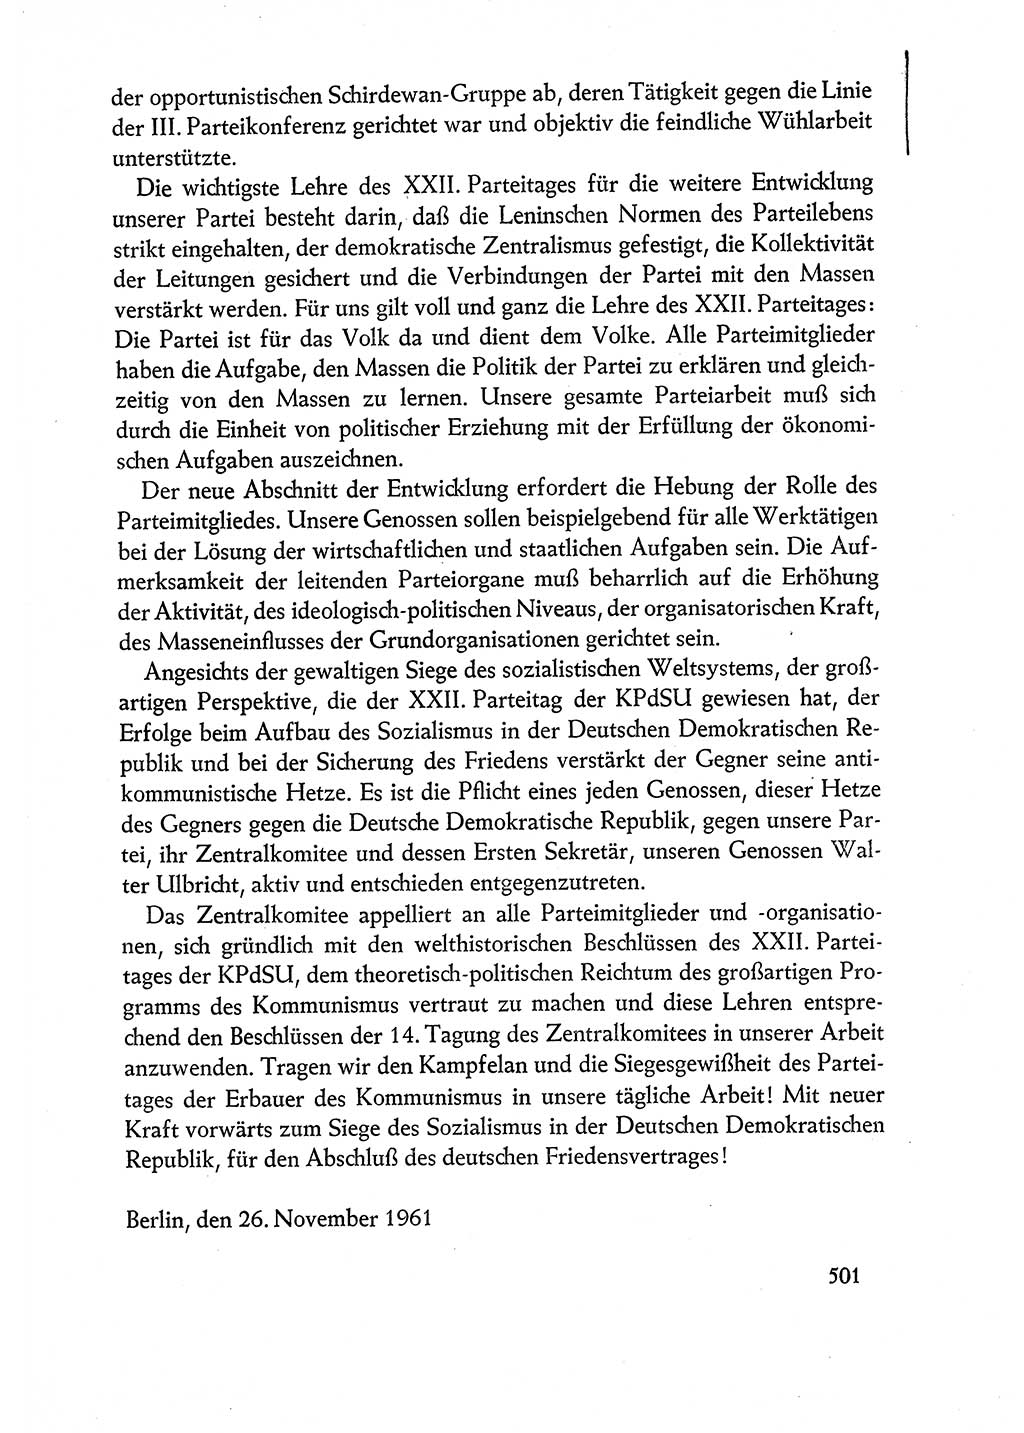 Dokumente der Sozialistischen Einheitspartei Deutschlands (SED) [Deutsche Demokratische Republik (DDR)] 1960-1961, Seite 501 (Dok. SED DDR 1960-1961, S. 501)